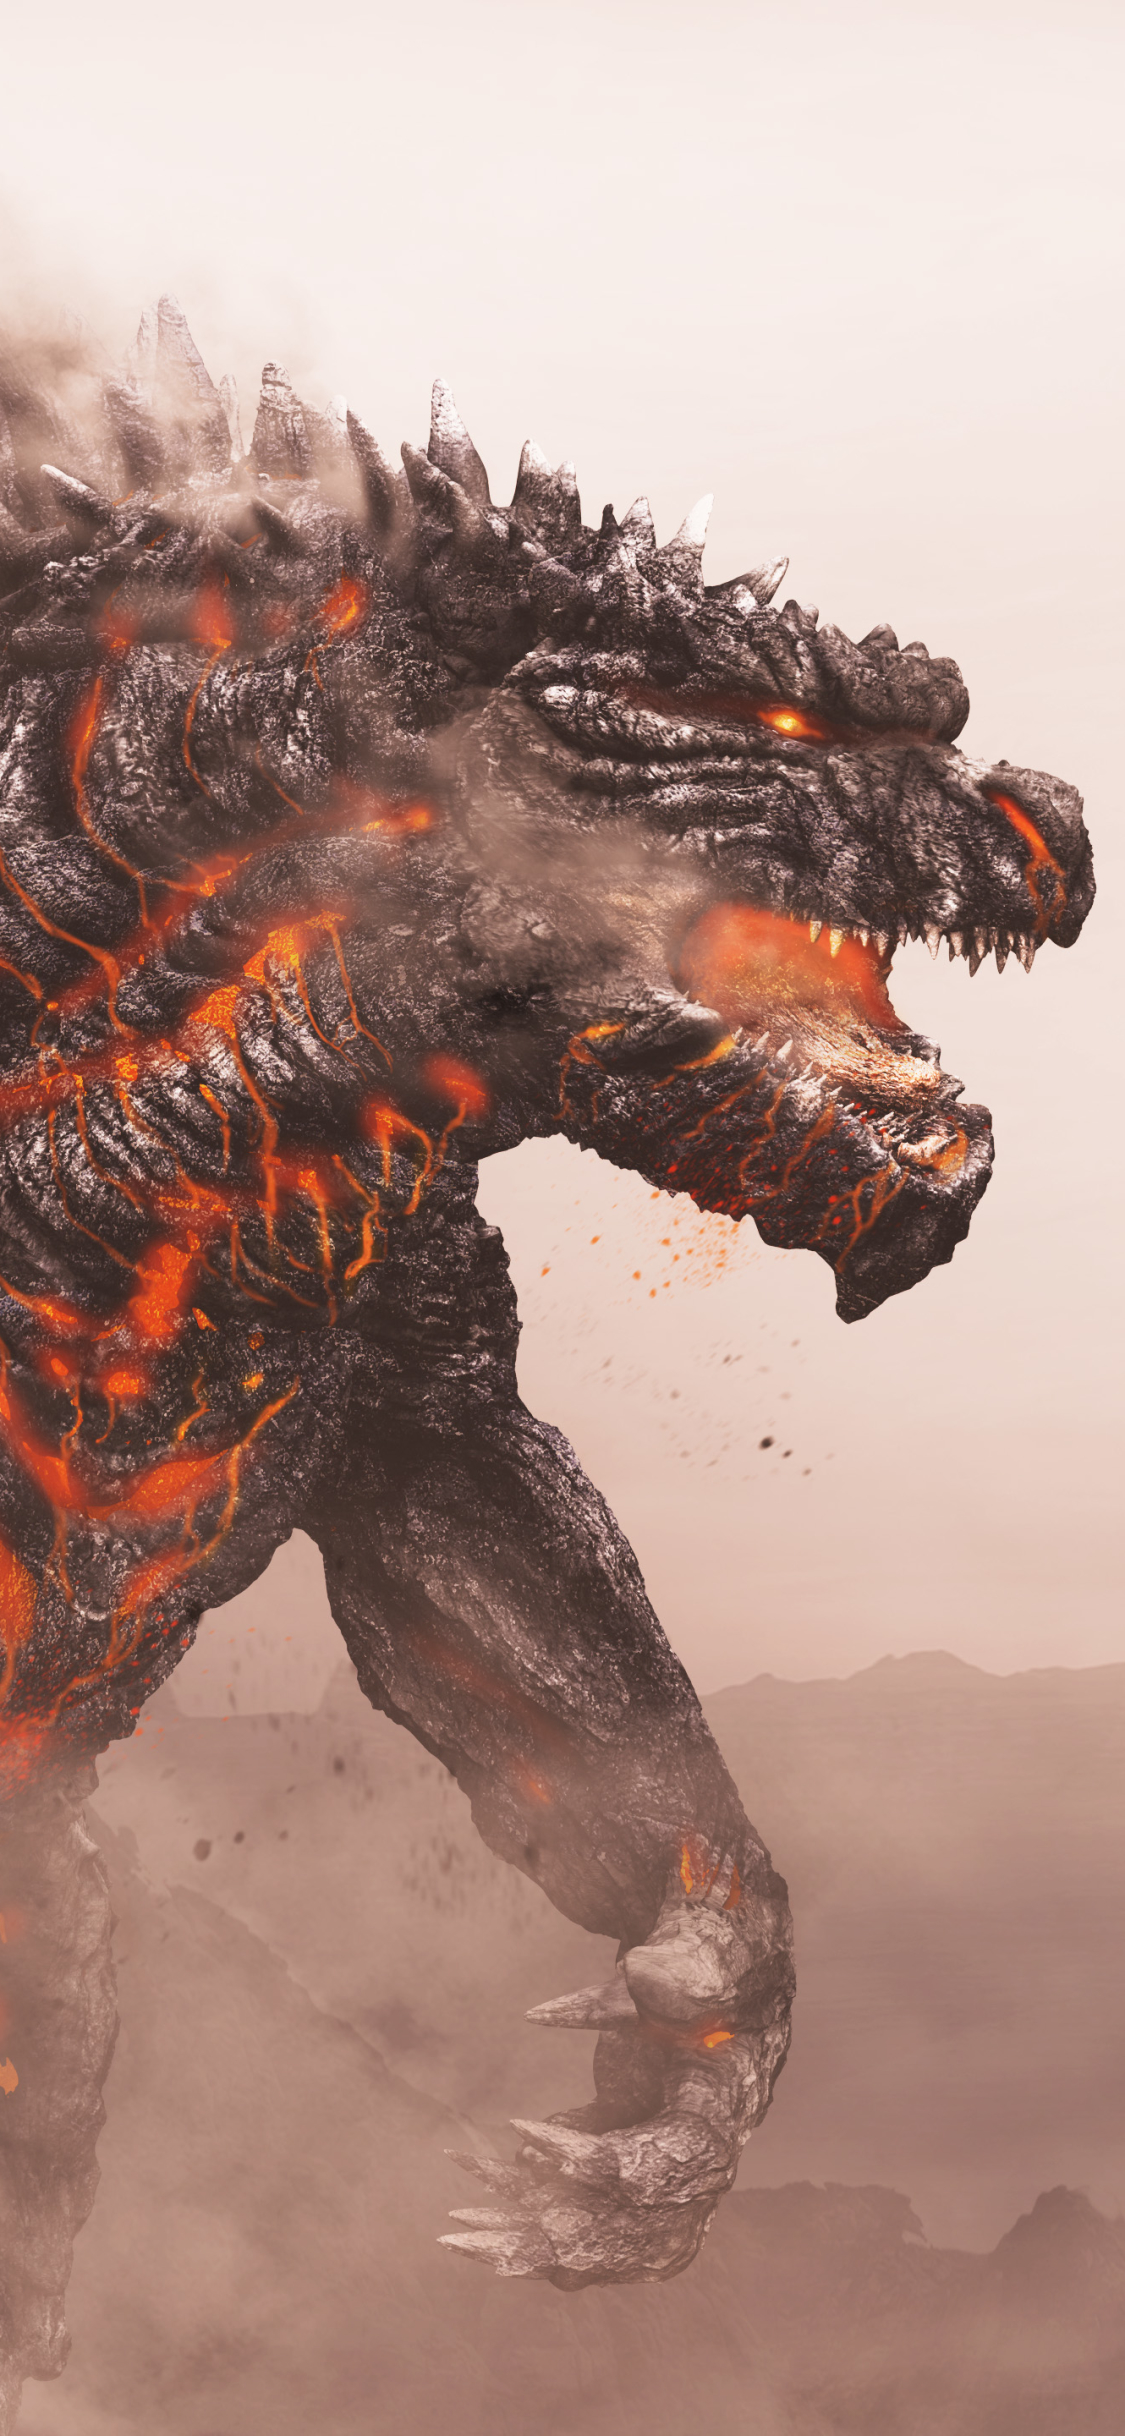 Descarga gratuita de fondo de pantalla para móvil de Fantasía, Godzilla.